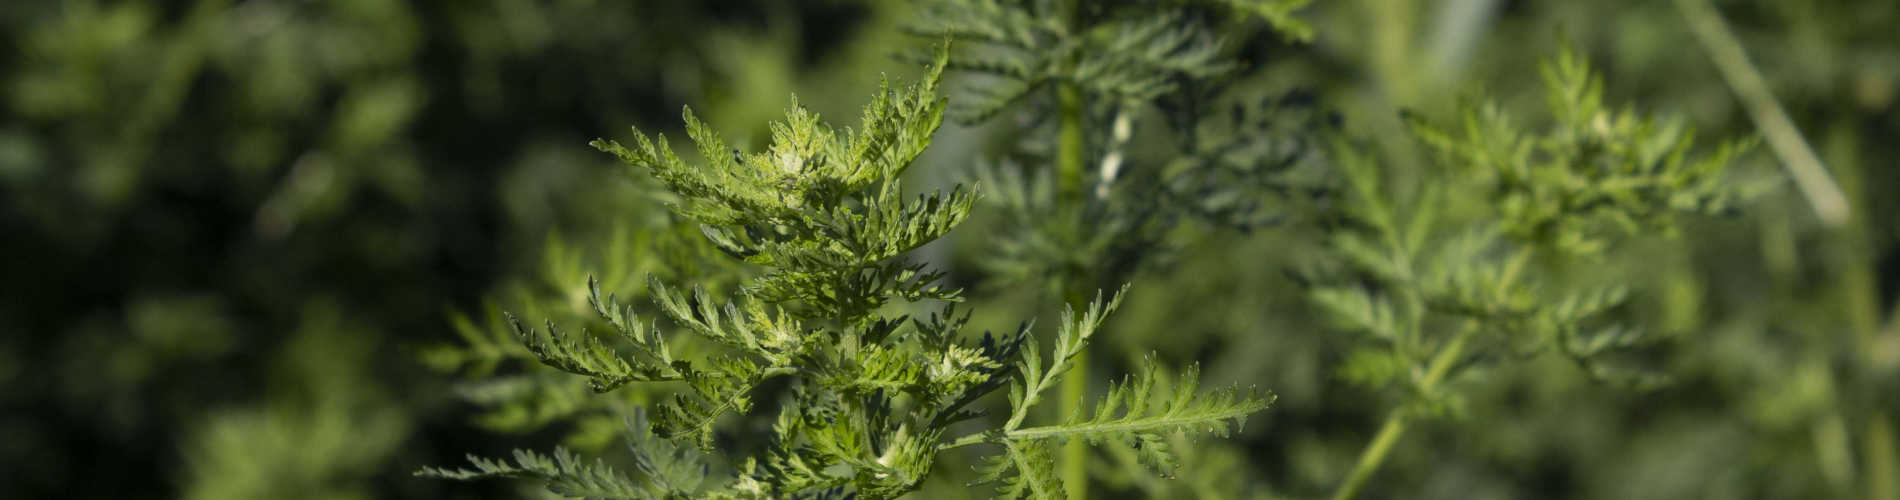 Einjähriger Beifuss - Artemisia annua